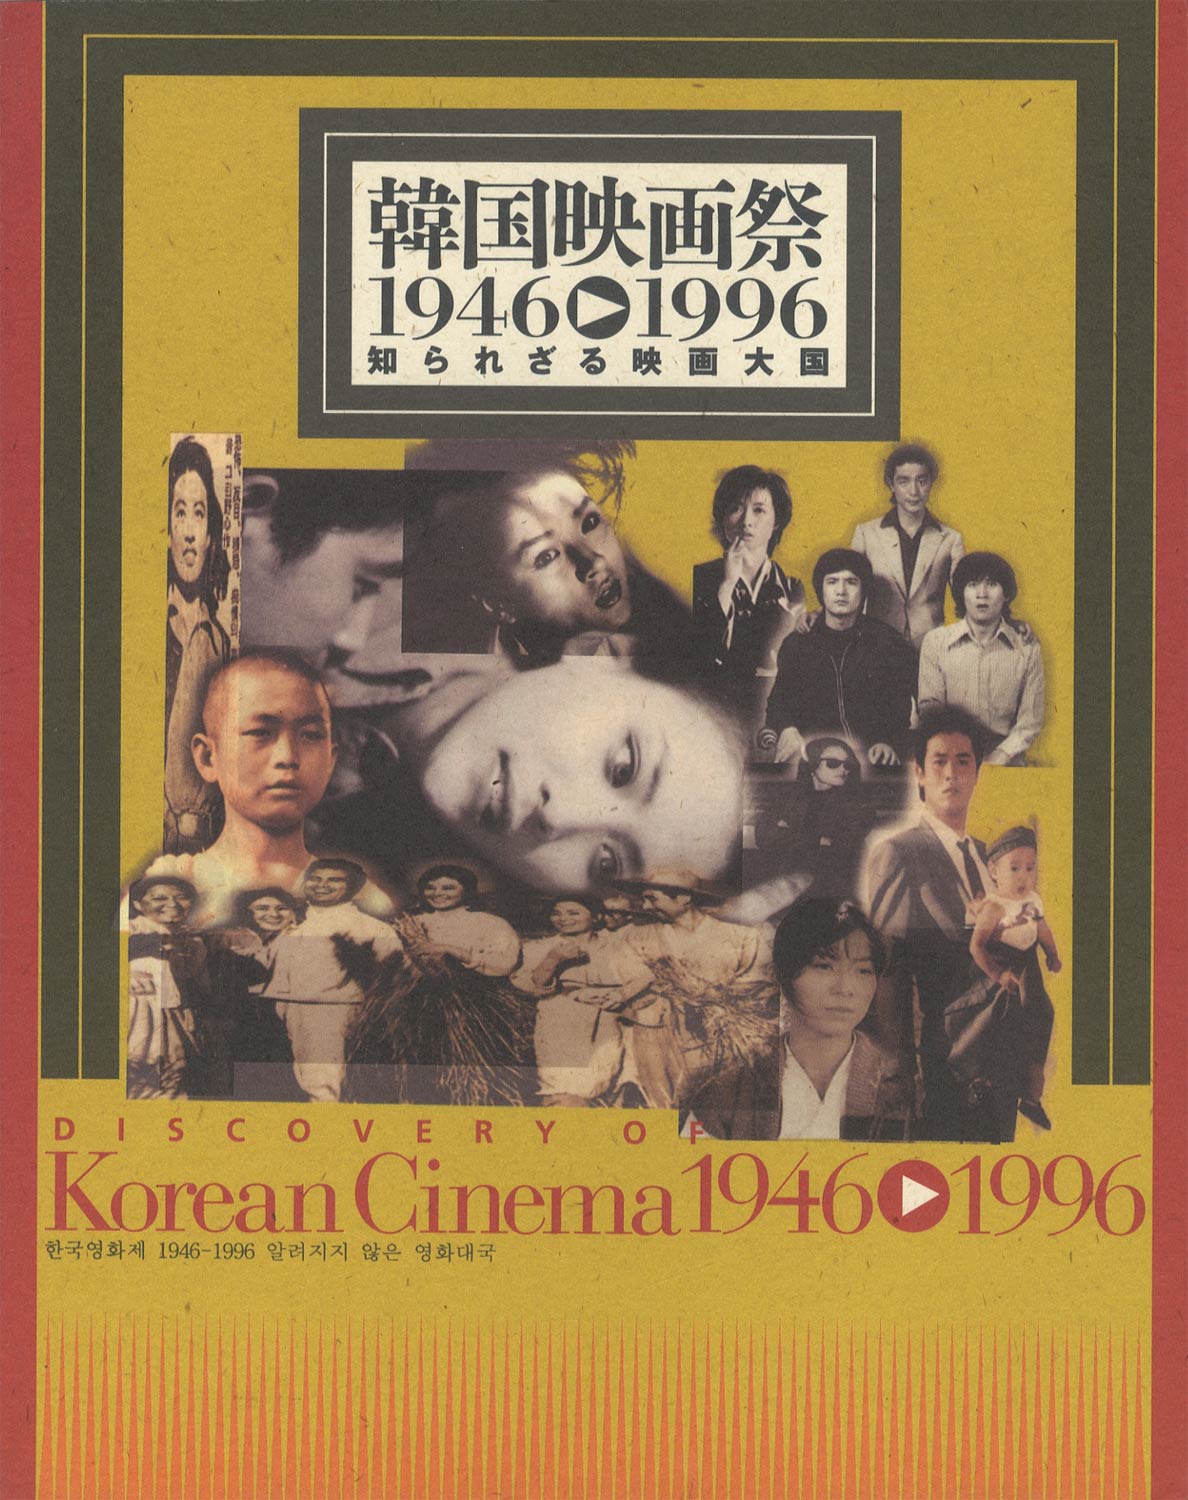 韓国映画祭 1946-1996 知られざる映画大国［image1］